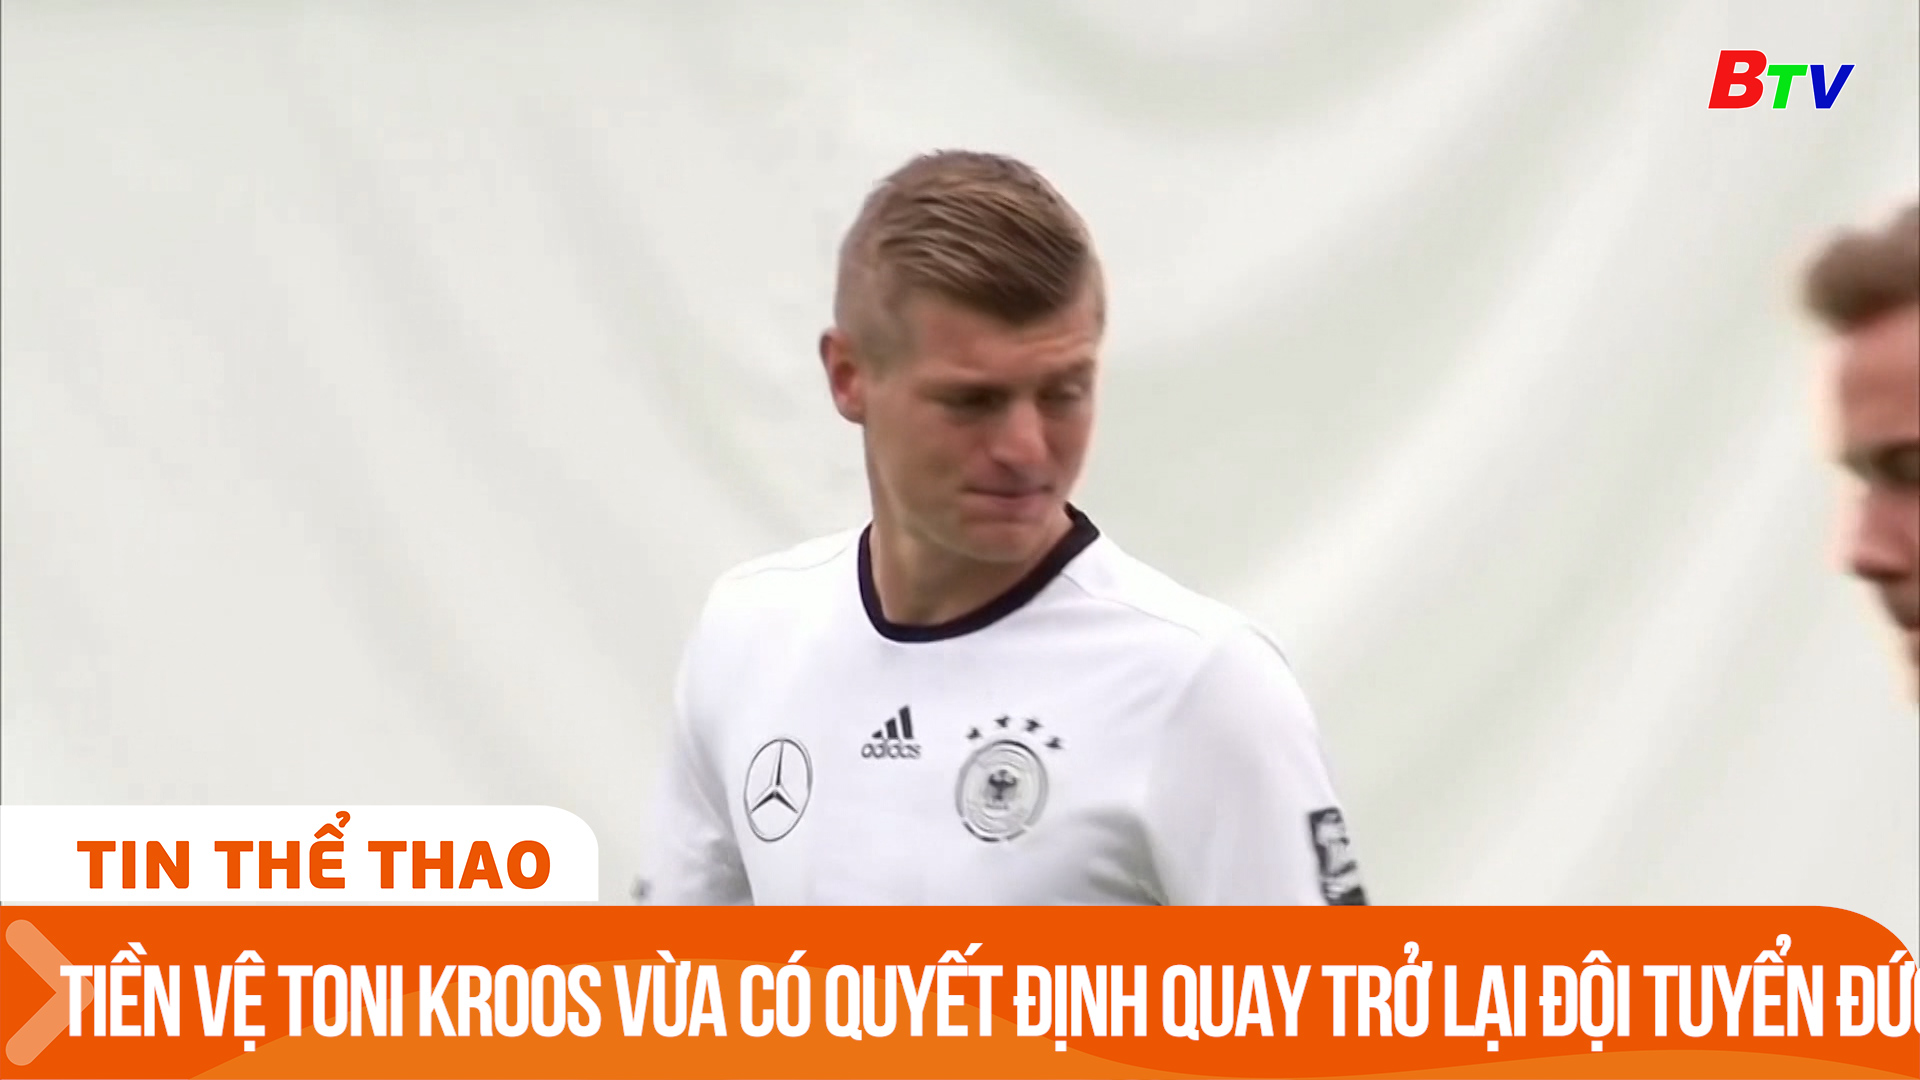 Tiền vệ Toni Kroos vừa có quyết định quay trở lại đội tuyển Đức | Tin Thể thao 24h	